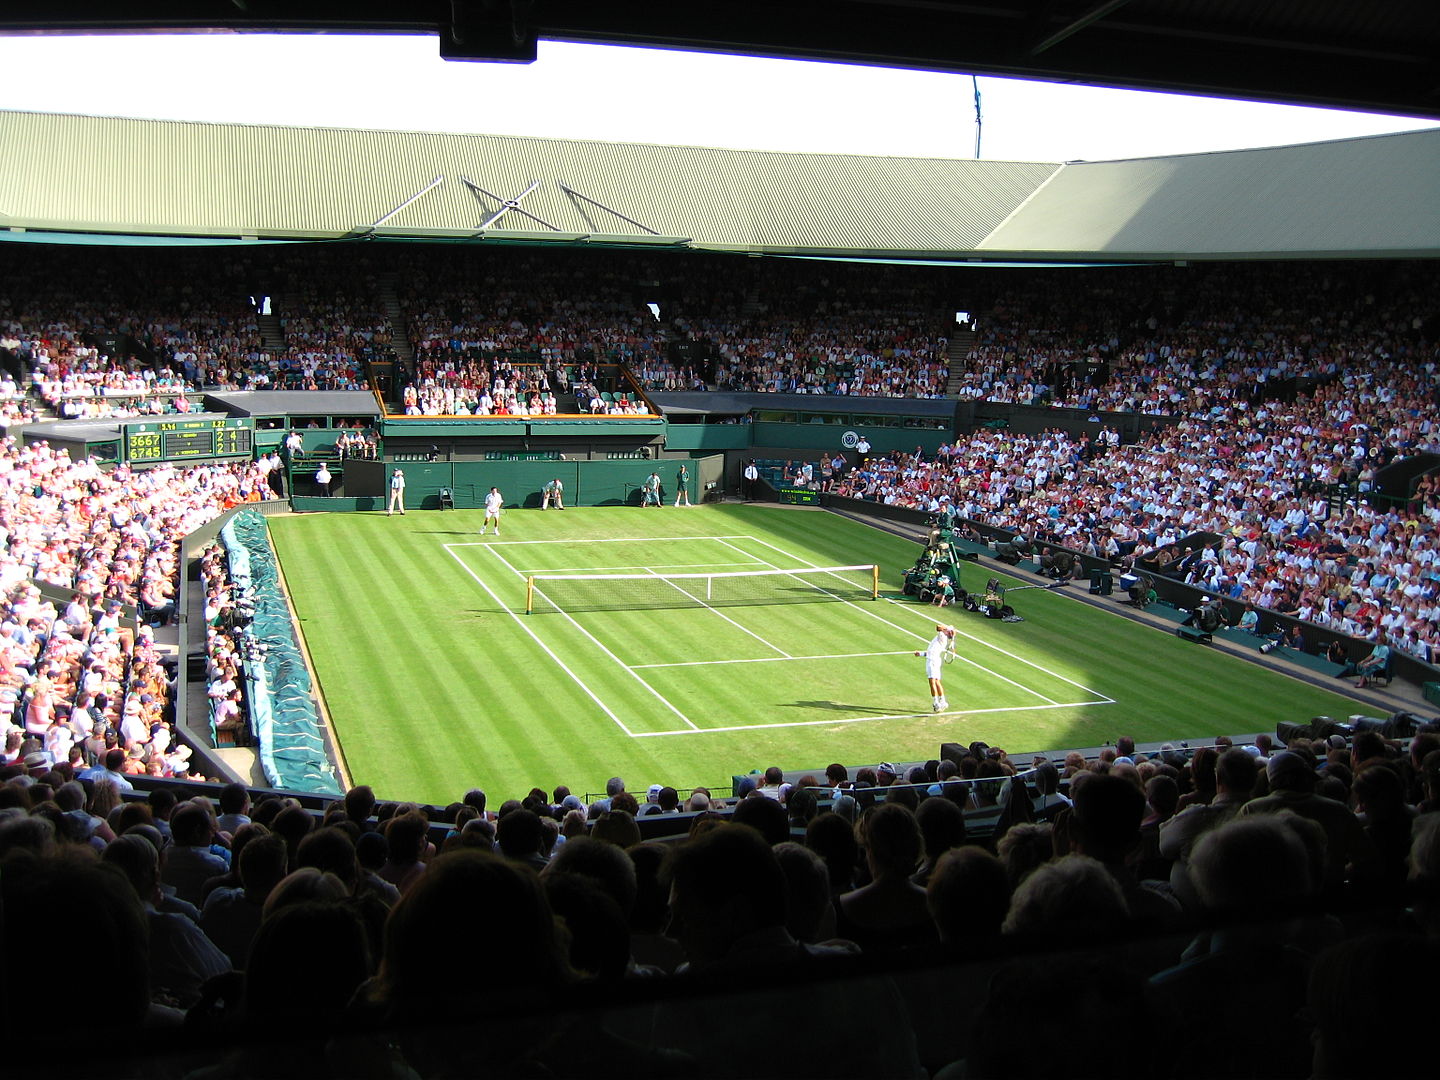 Tennisplatz von Wimbledon mit Spielern|Venus Williams beim Aufschlag|